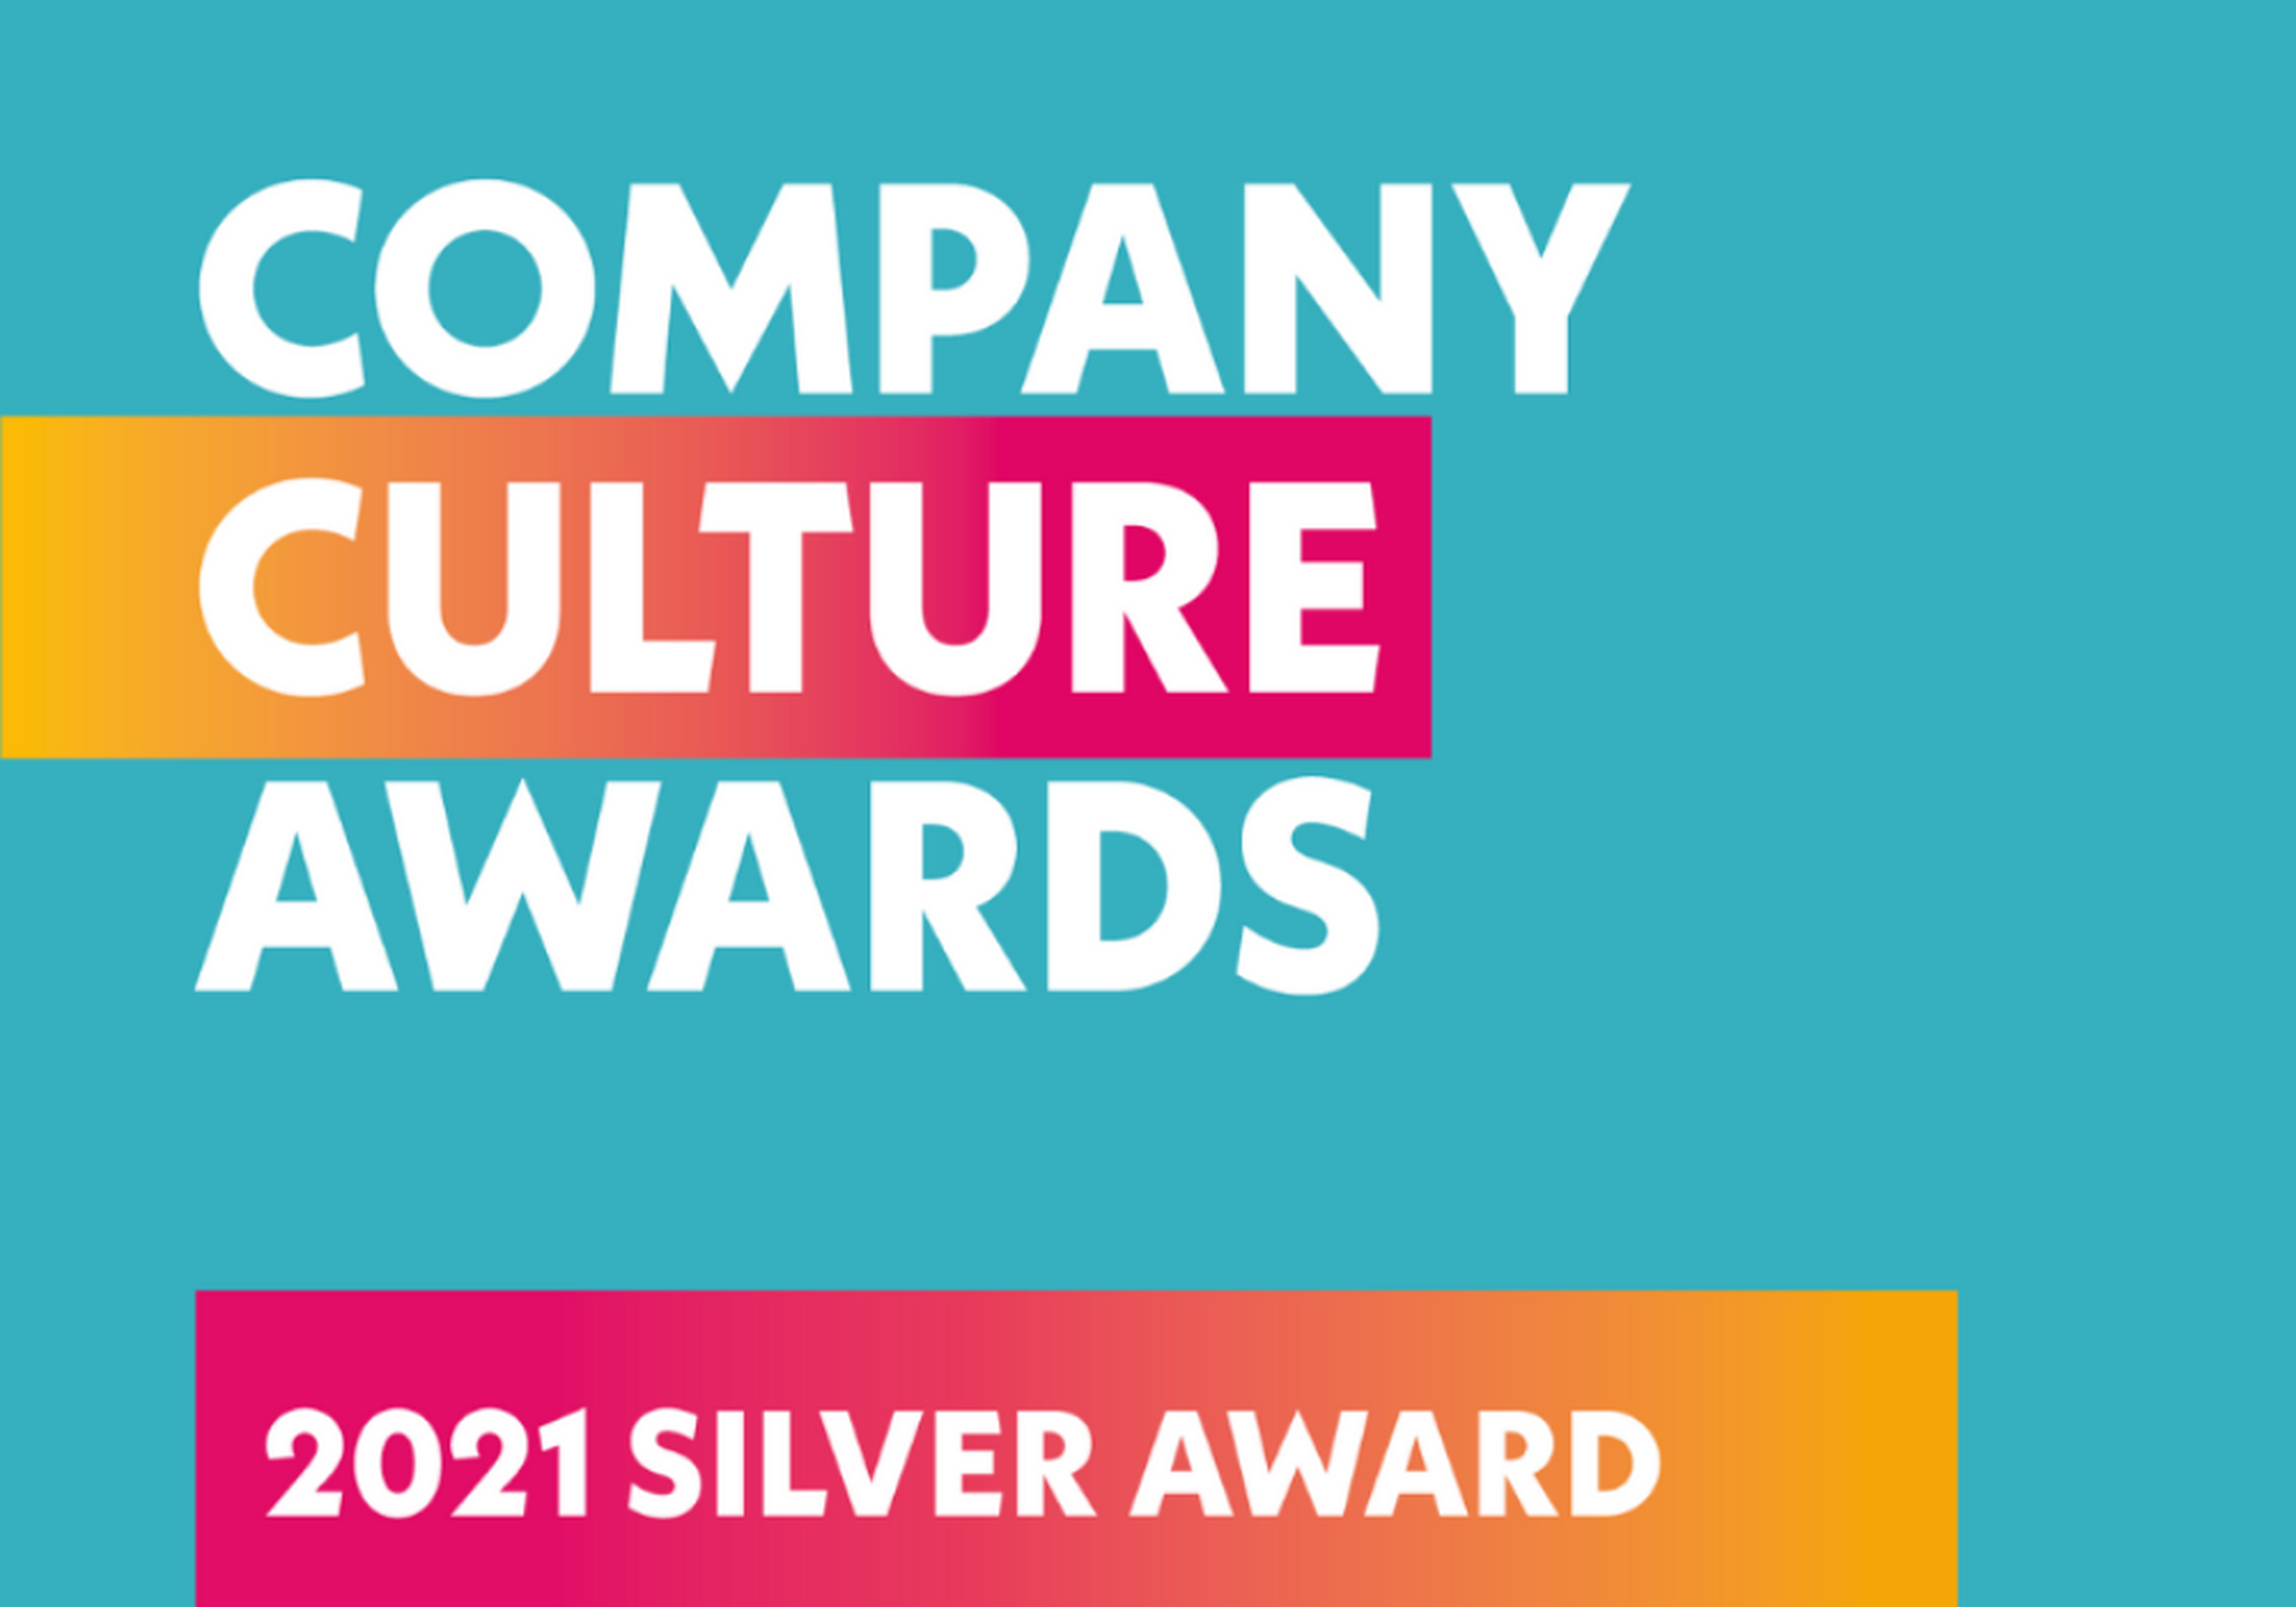 Company culture awards 2021